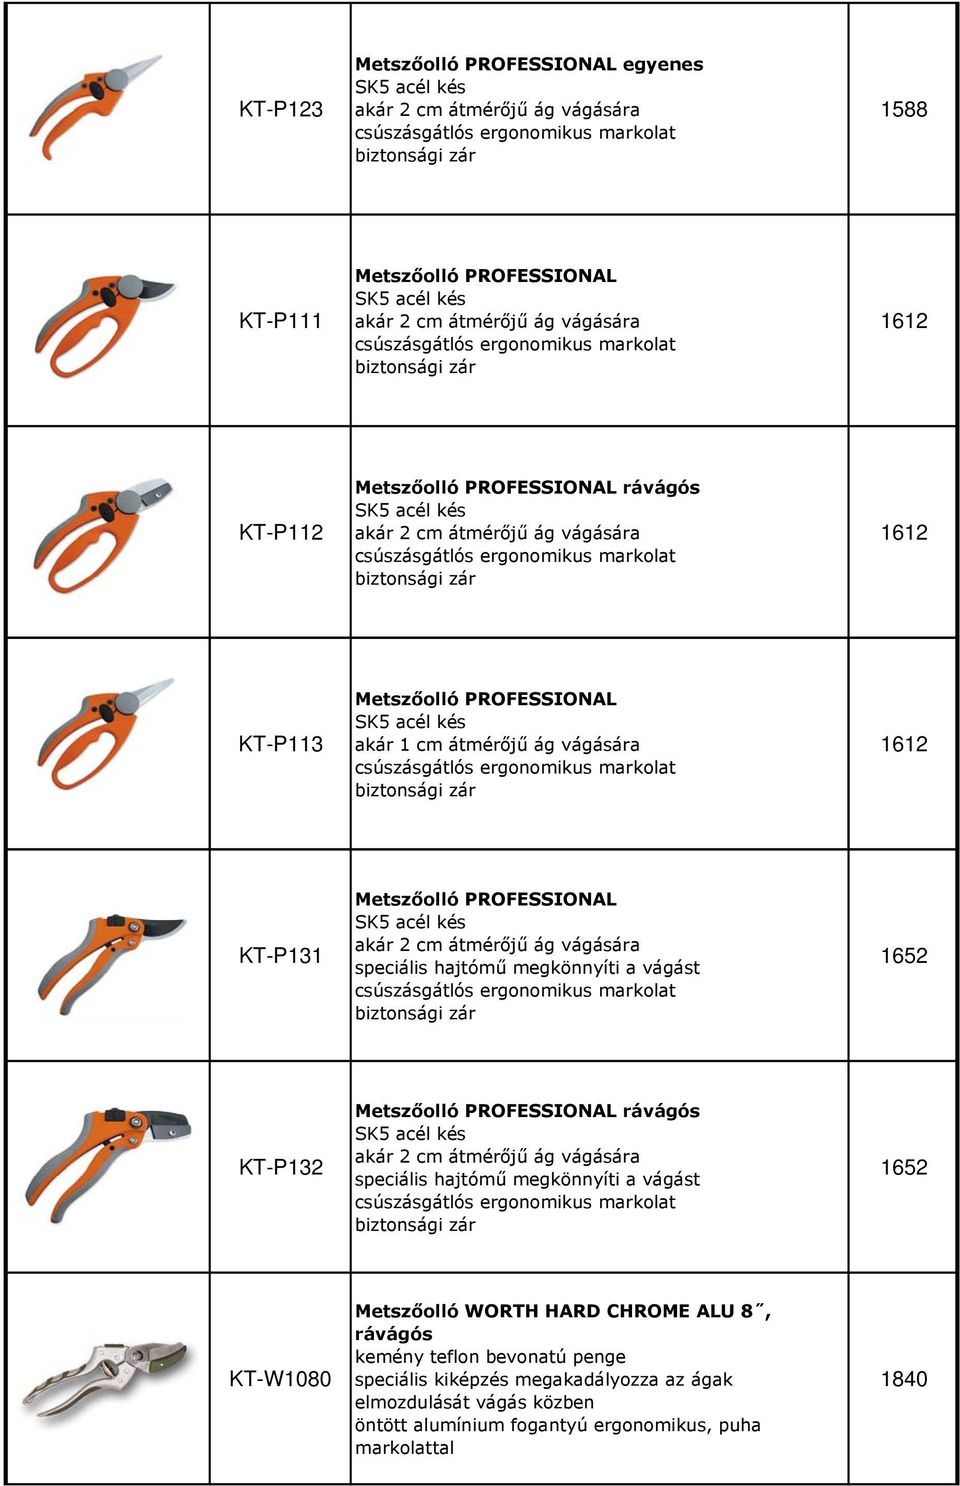 biztonsági zár 1612 KT-P113 Metszőolló PROFESSIONAL SK5 acél kés akár 1 cm átmérőjű ág vágására csúszásgátlós ergonomikus markolat biztonsági zár 1612 KT-P131 Metszőolló PROFESSIONAL SK5 acél kés